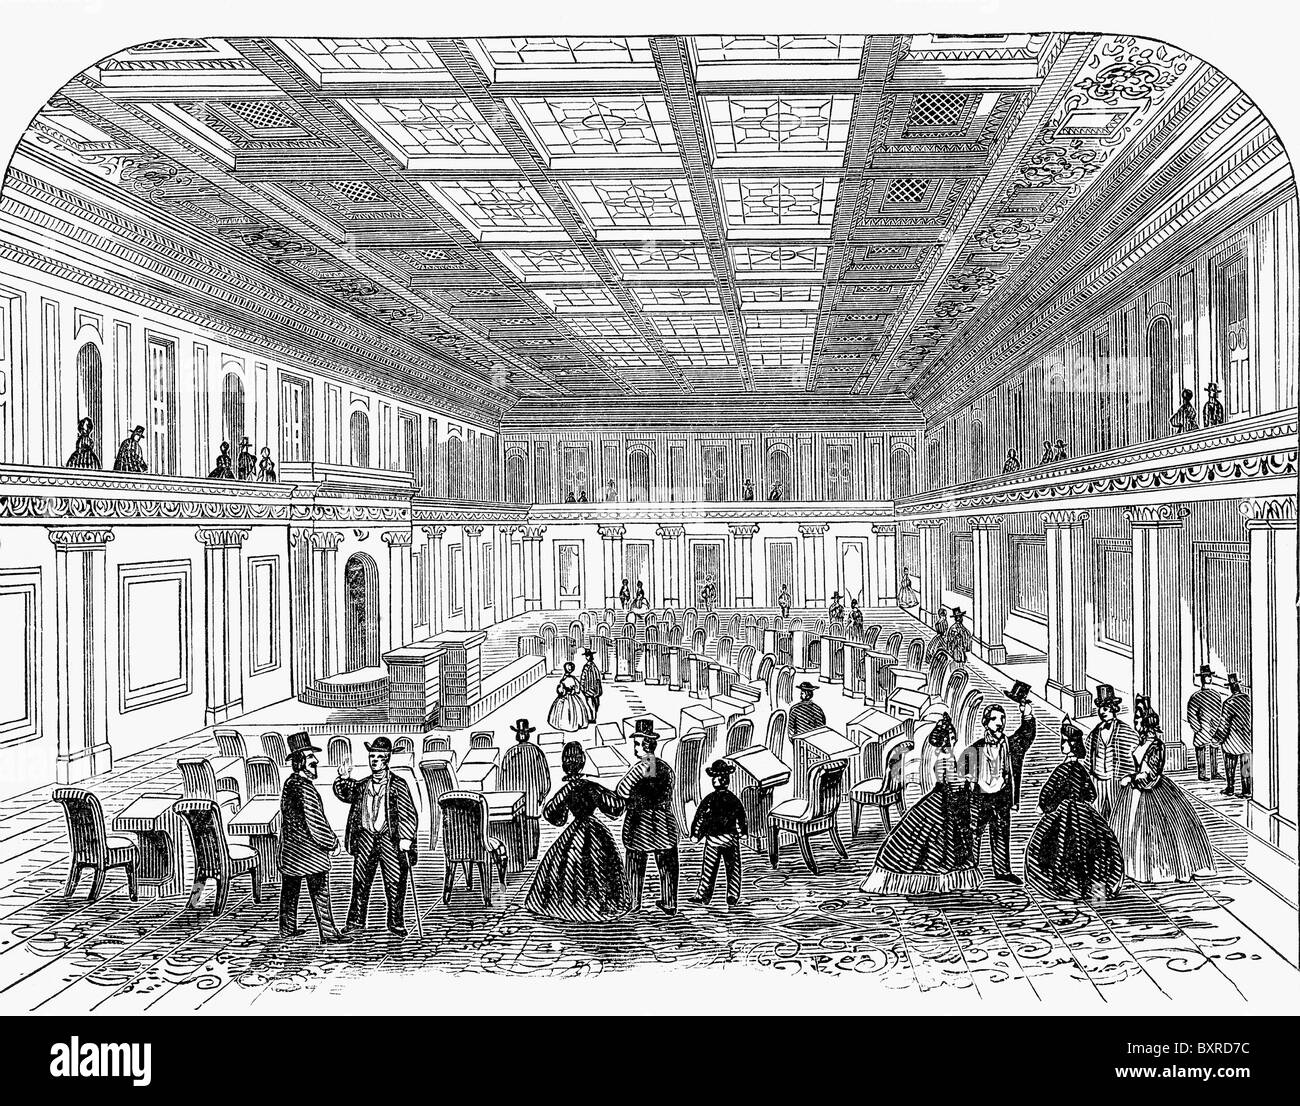 L'illustration montre les Etats-Unis du Sénat qu'elle en avait l'air en 1860, juste avant le début de la guerre civile. Banque D'Images